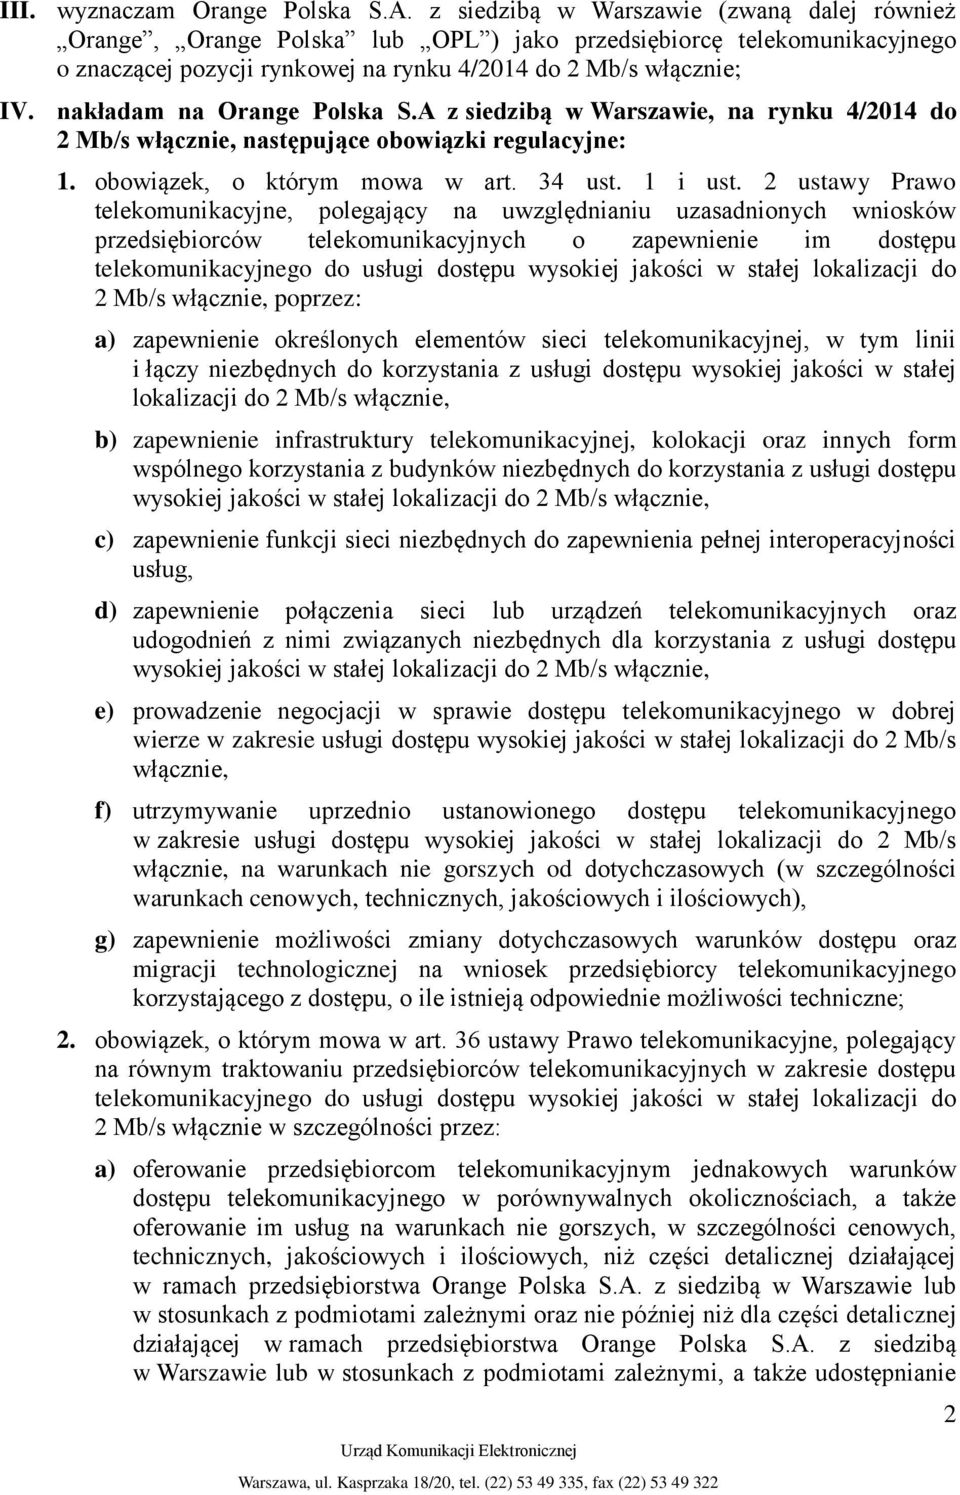 nakładam na Orange Polska S.A z siedzibą w Warszawie, na rynku 4/2014 do 2 Mb/s włącznie, następujące obowiązki regulacyjne: 1. obowiązek, o którym mowa w art. 34 ust. 1 i ust.